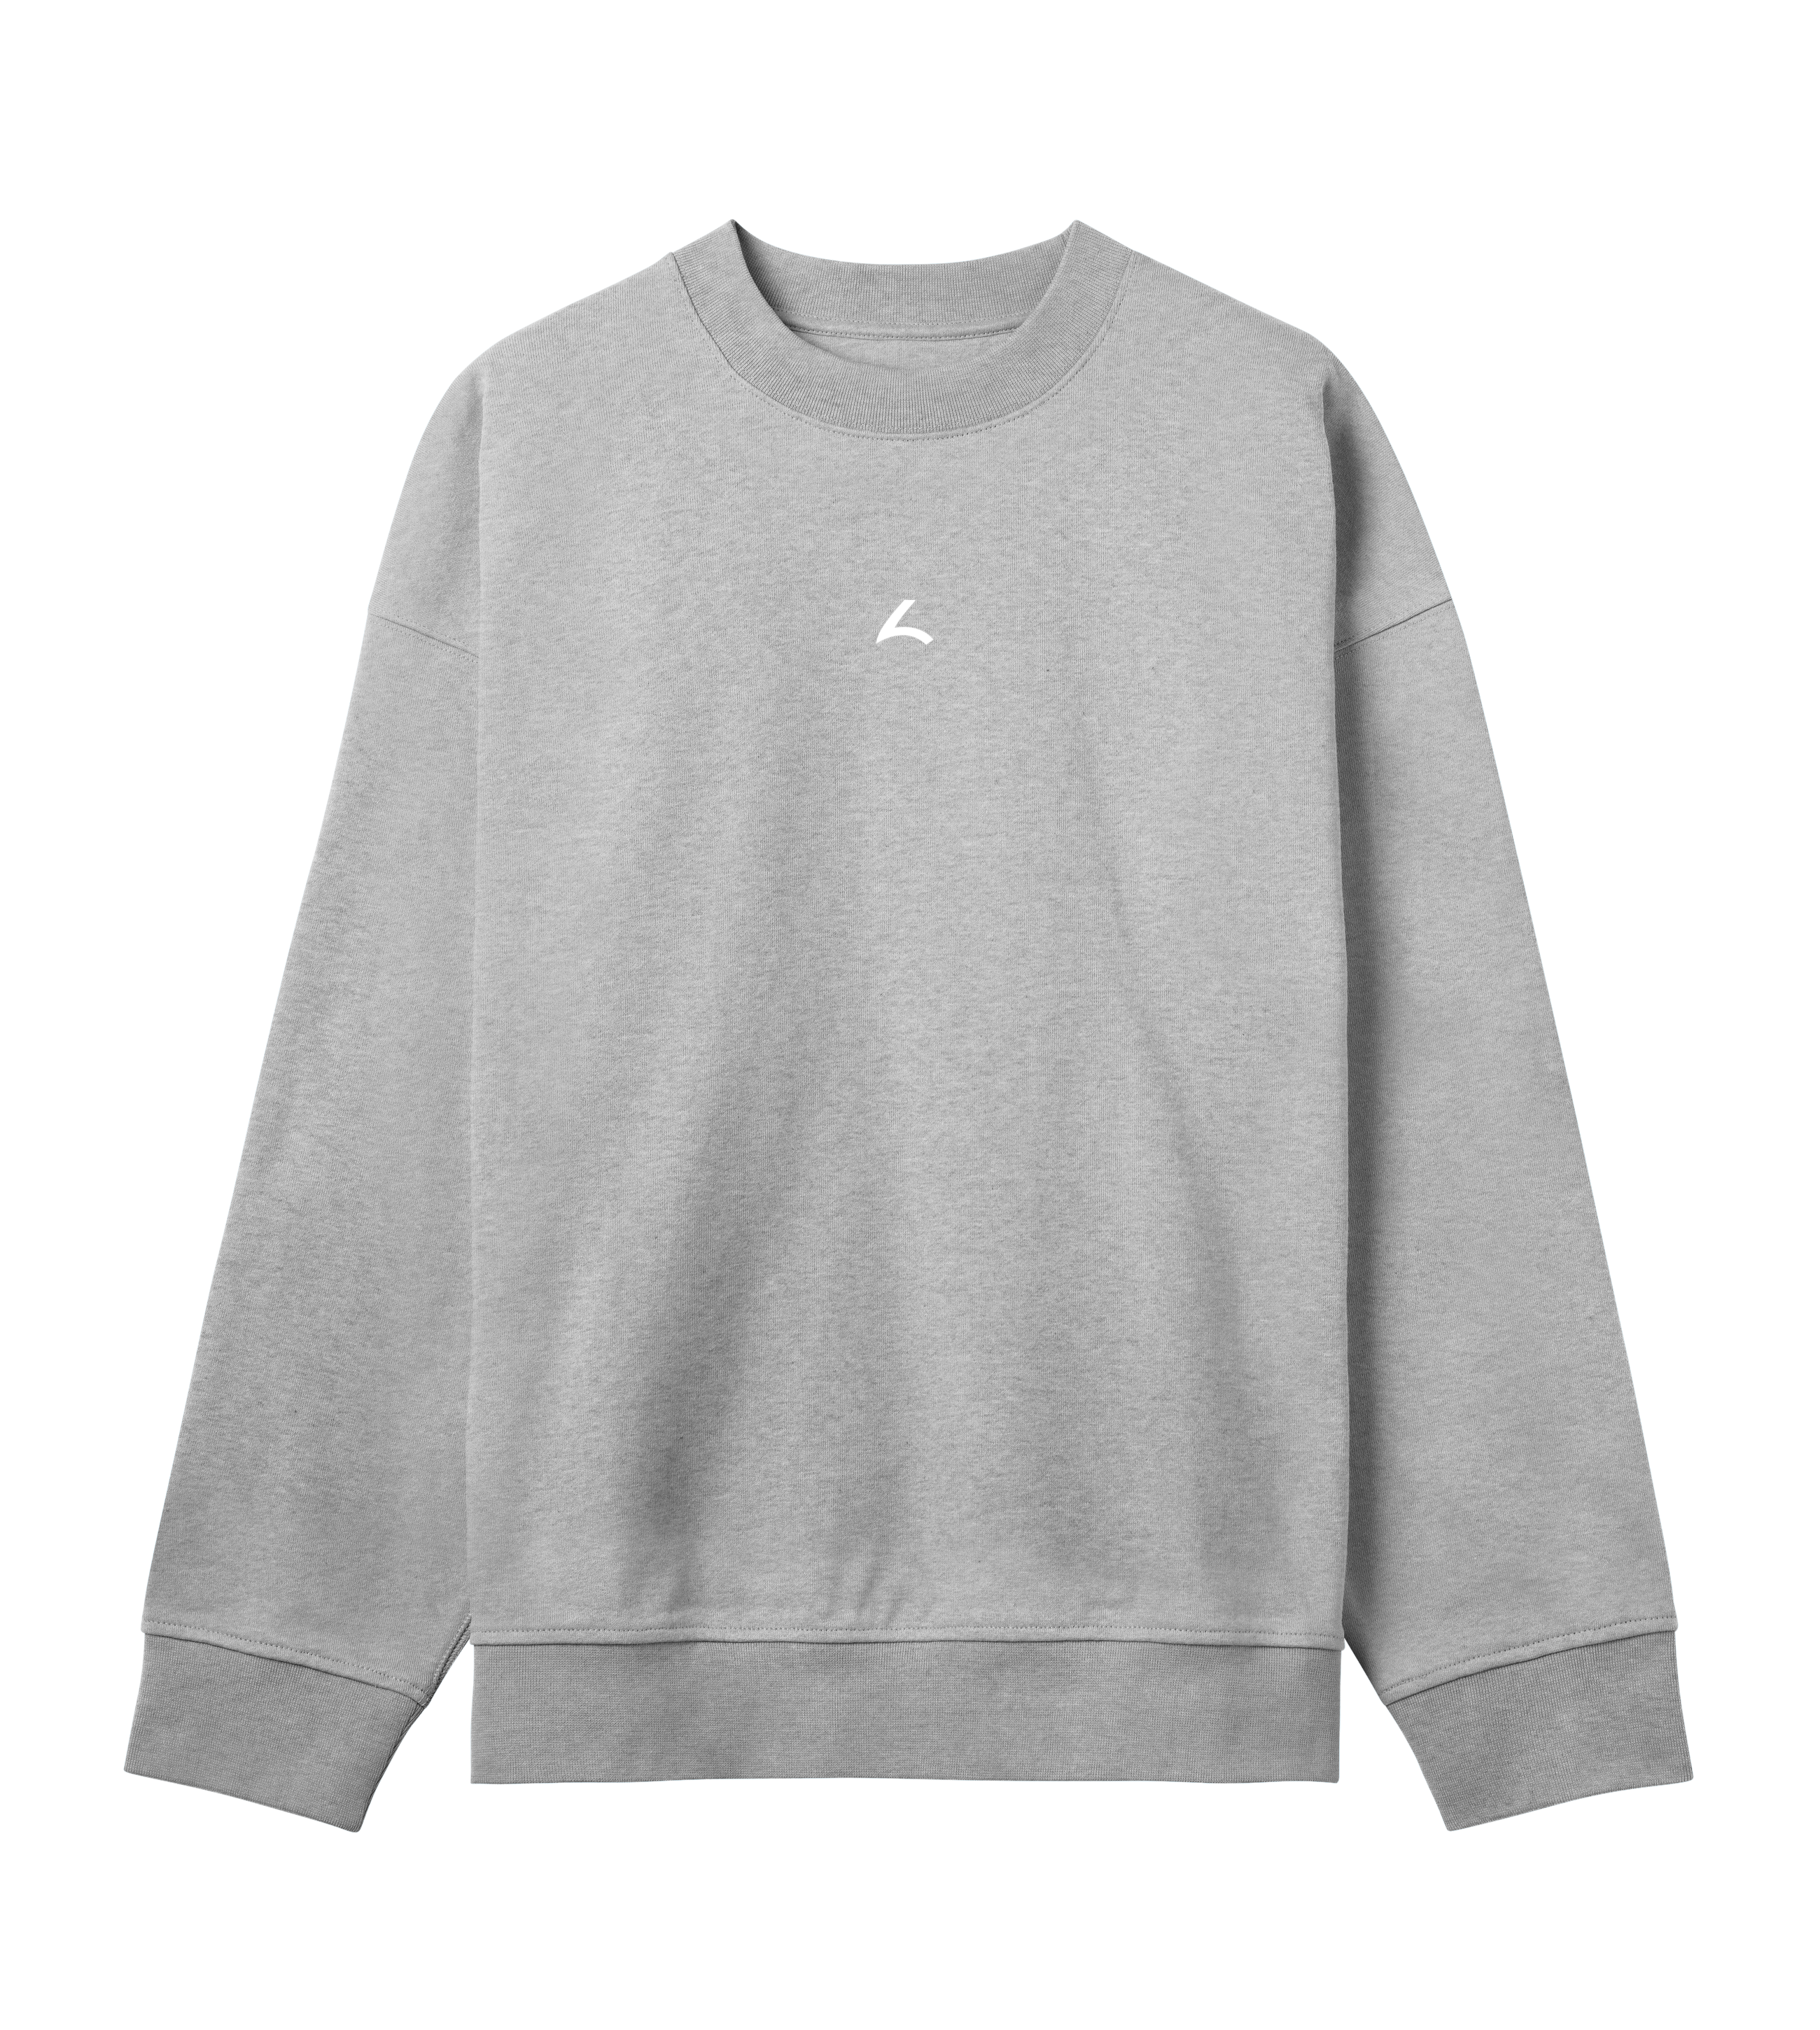 sweatshirt-grey-front_e0571096-8e21-41a0-a4ff-03d8d3ef1da7.png